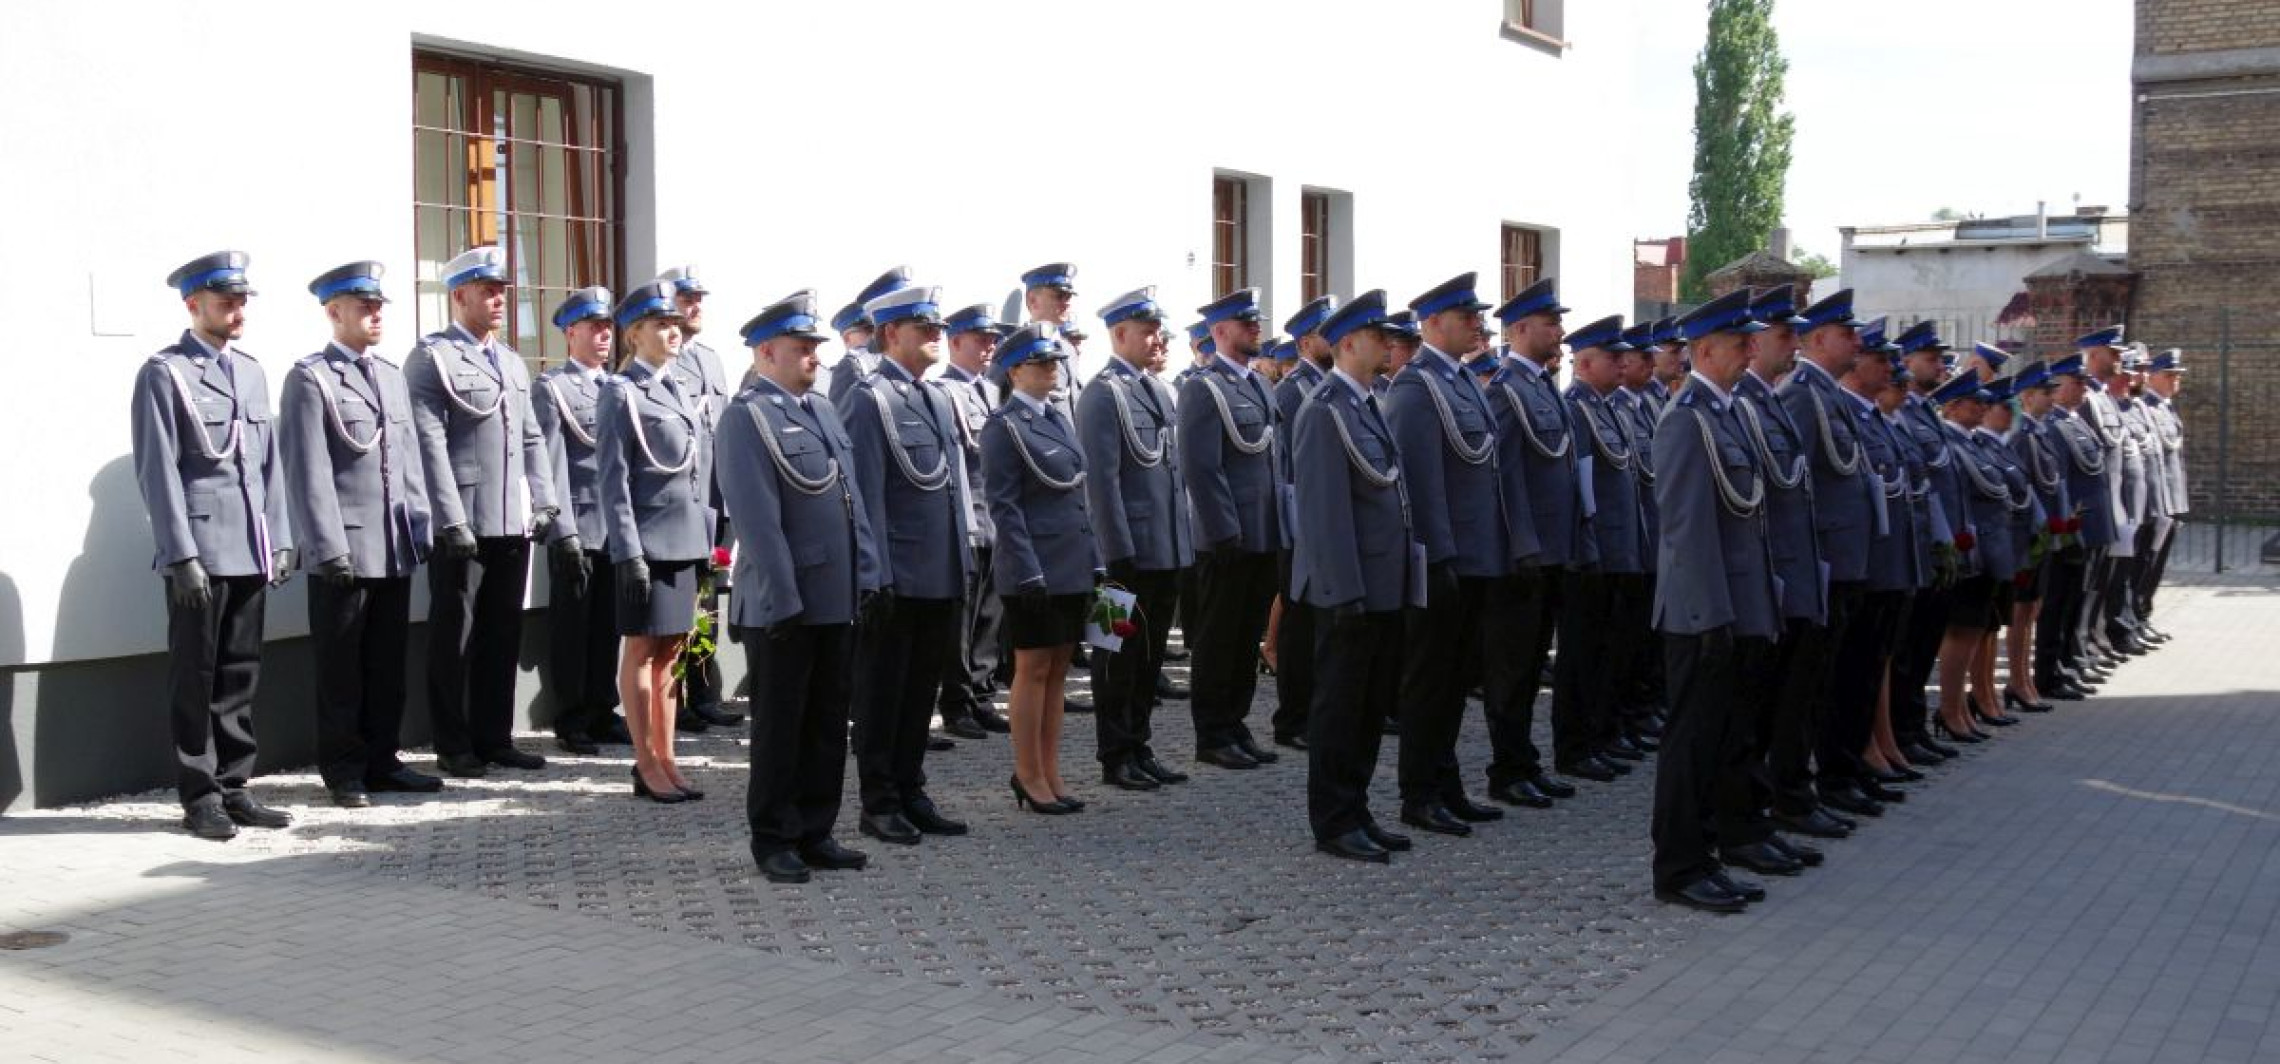 Inowrocław - Święto policji. Były życzenia i nominacje